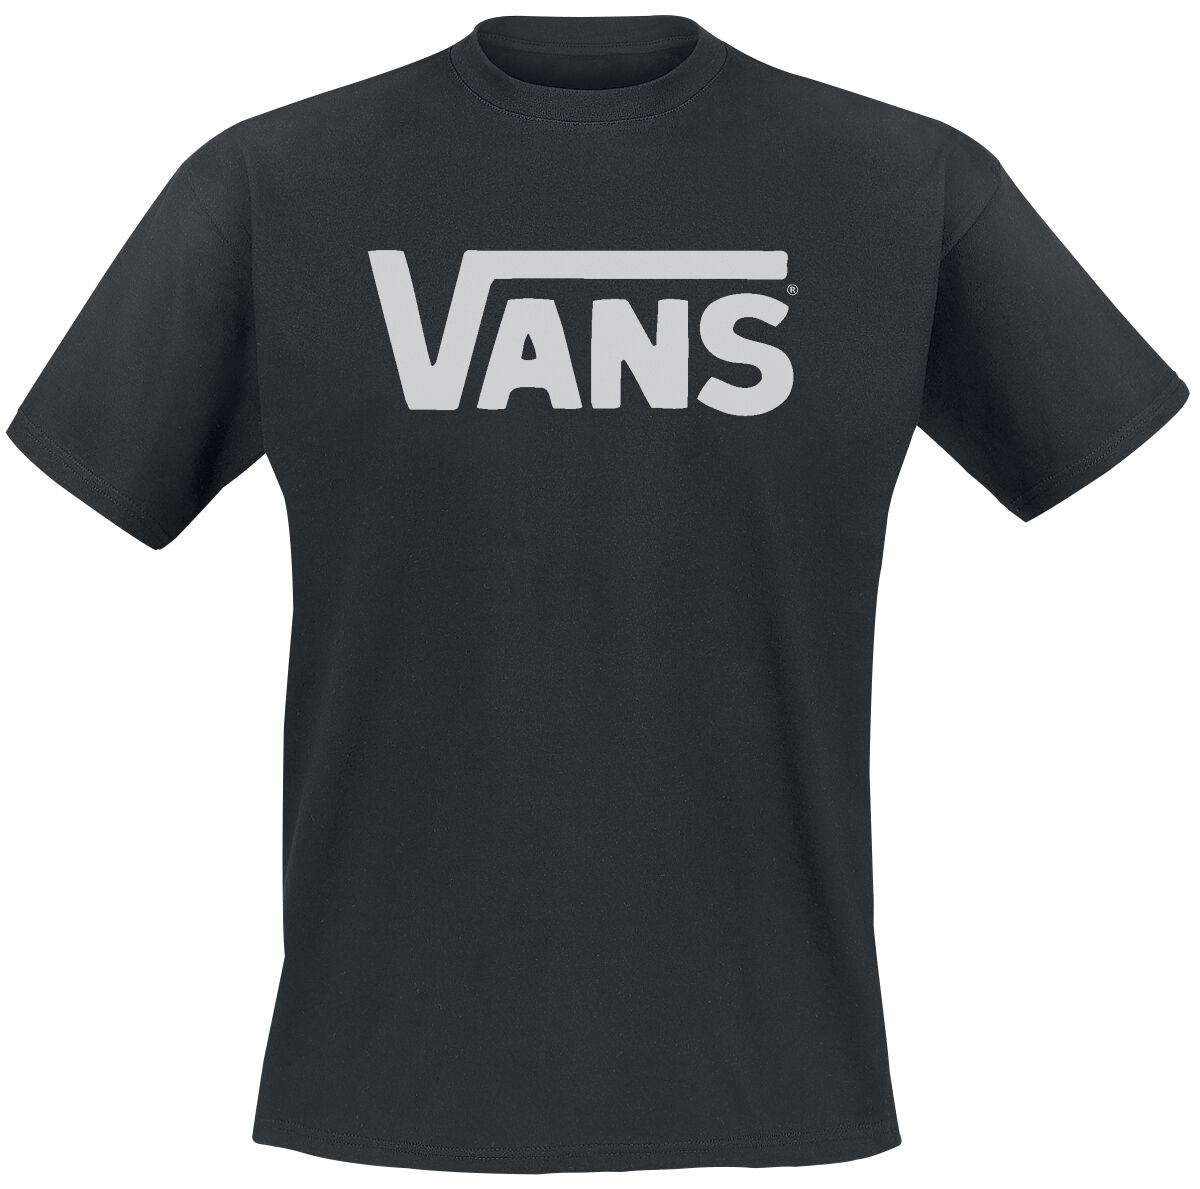 Vans T-Shirt - Classic - S bis L - für Männer - Größe L - schwarz/weiß